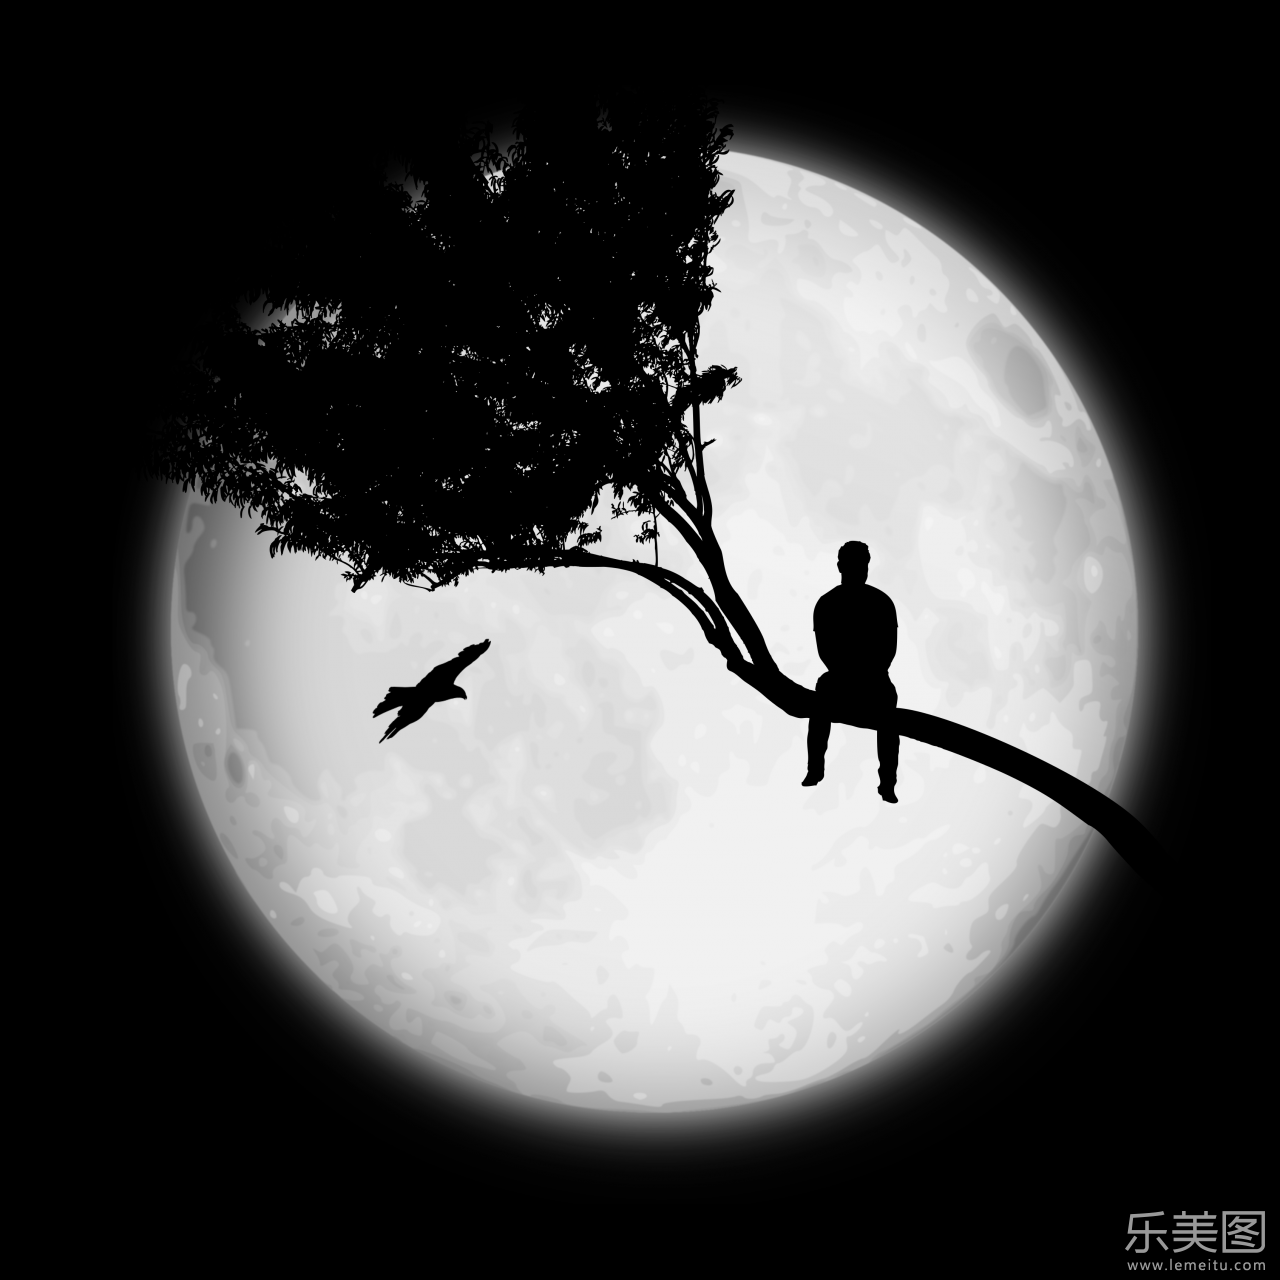 在黑夜巨大的月亮下有着一个孤单的人影坐在树枝上,黑白颜色与构图让